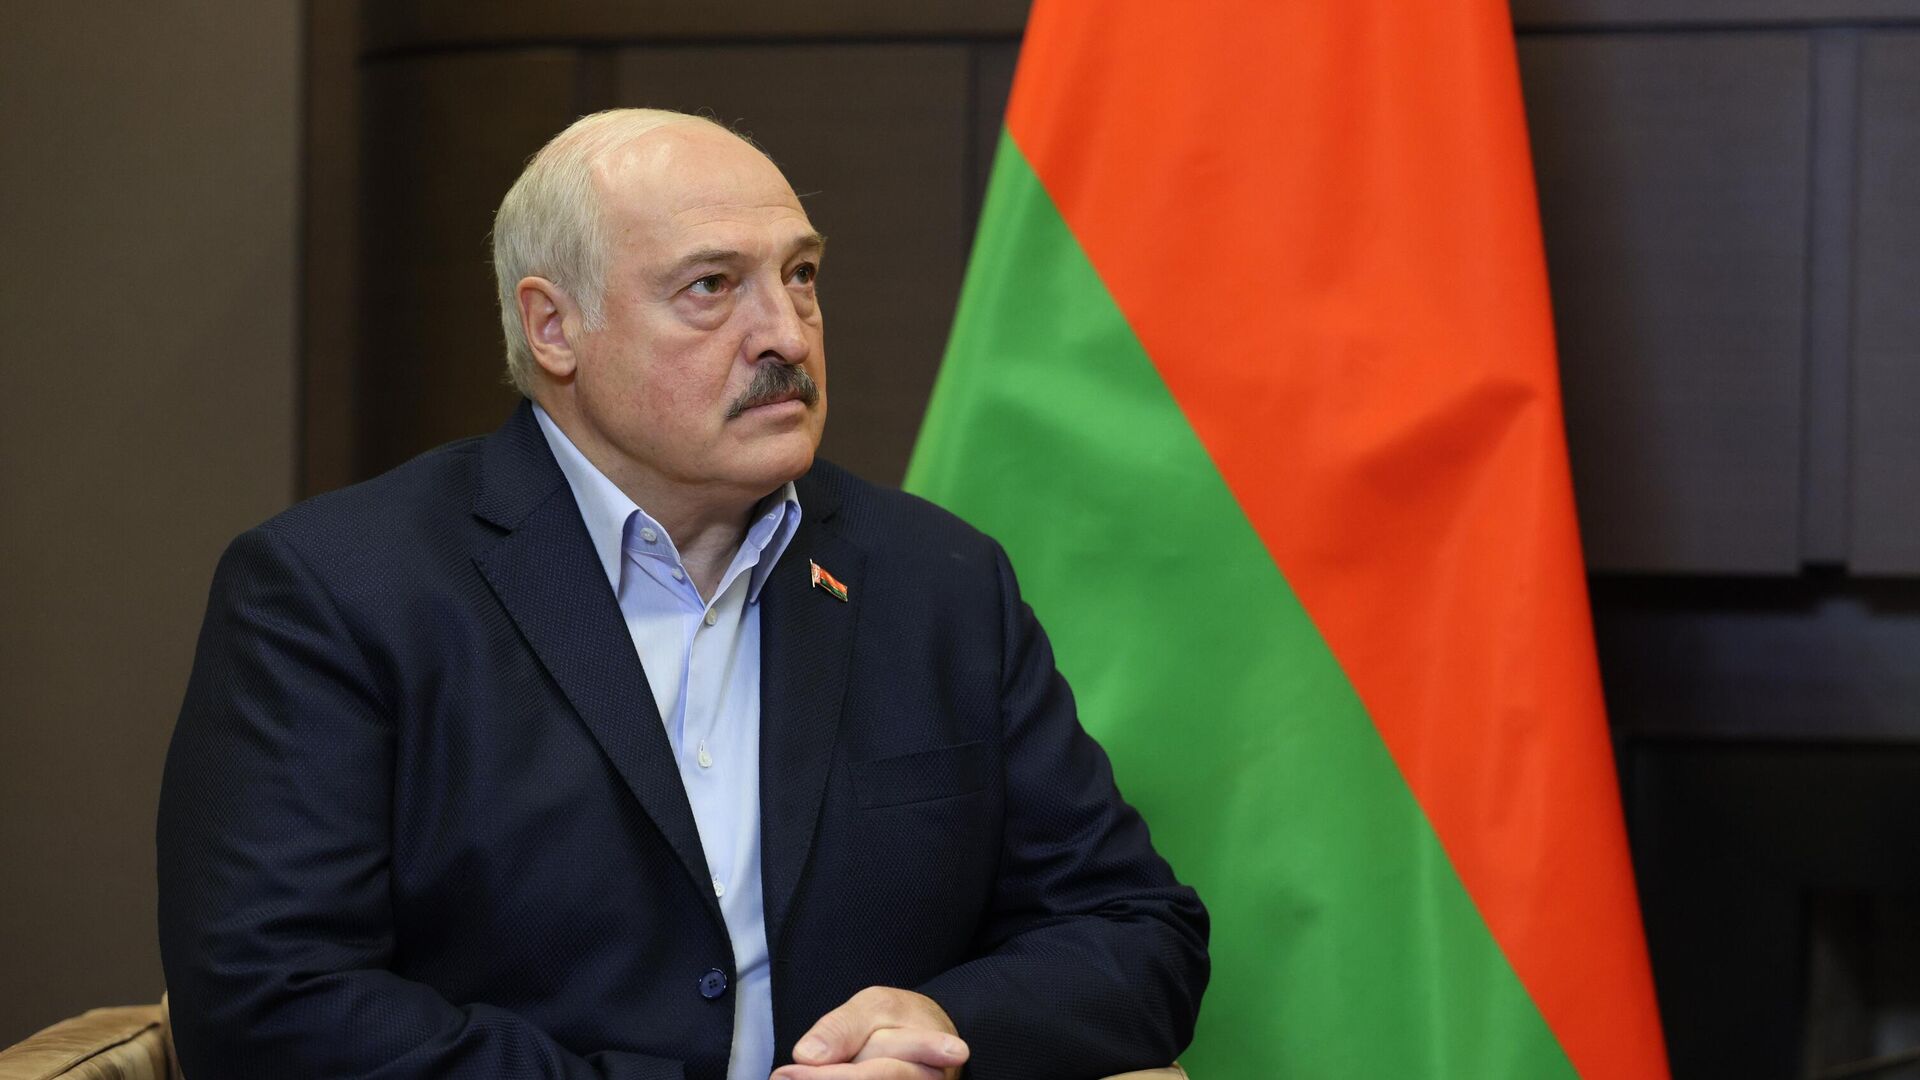 Александр Лукашенко обвинил МОК в попытке задушить Россию и Беларусь